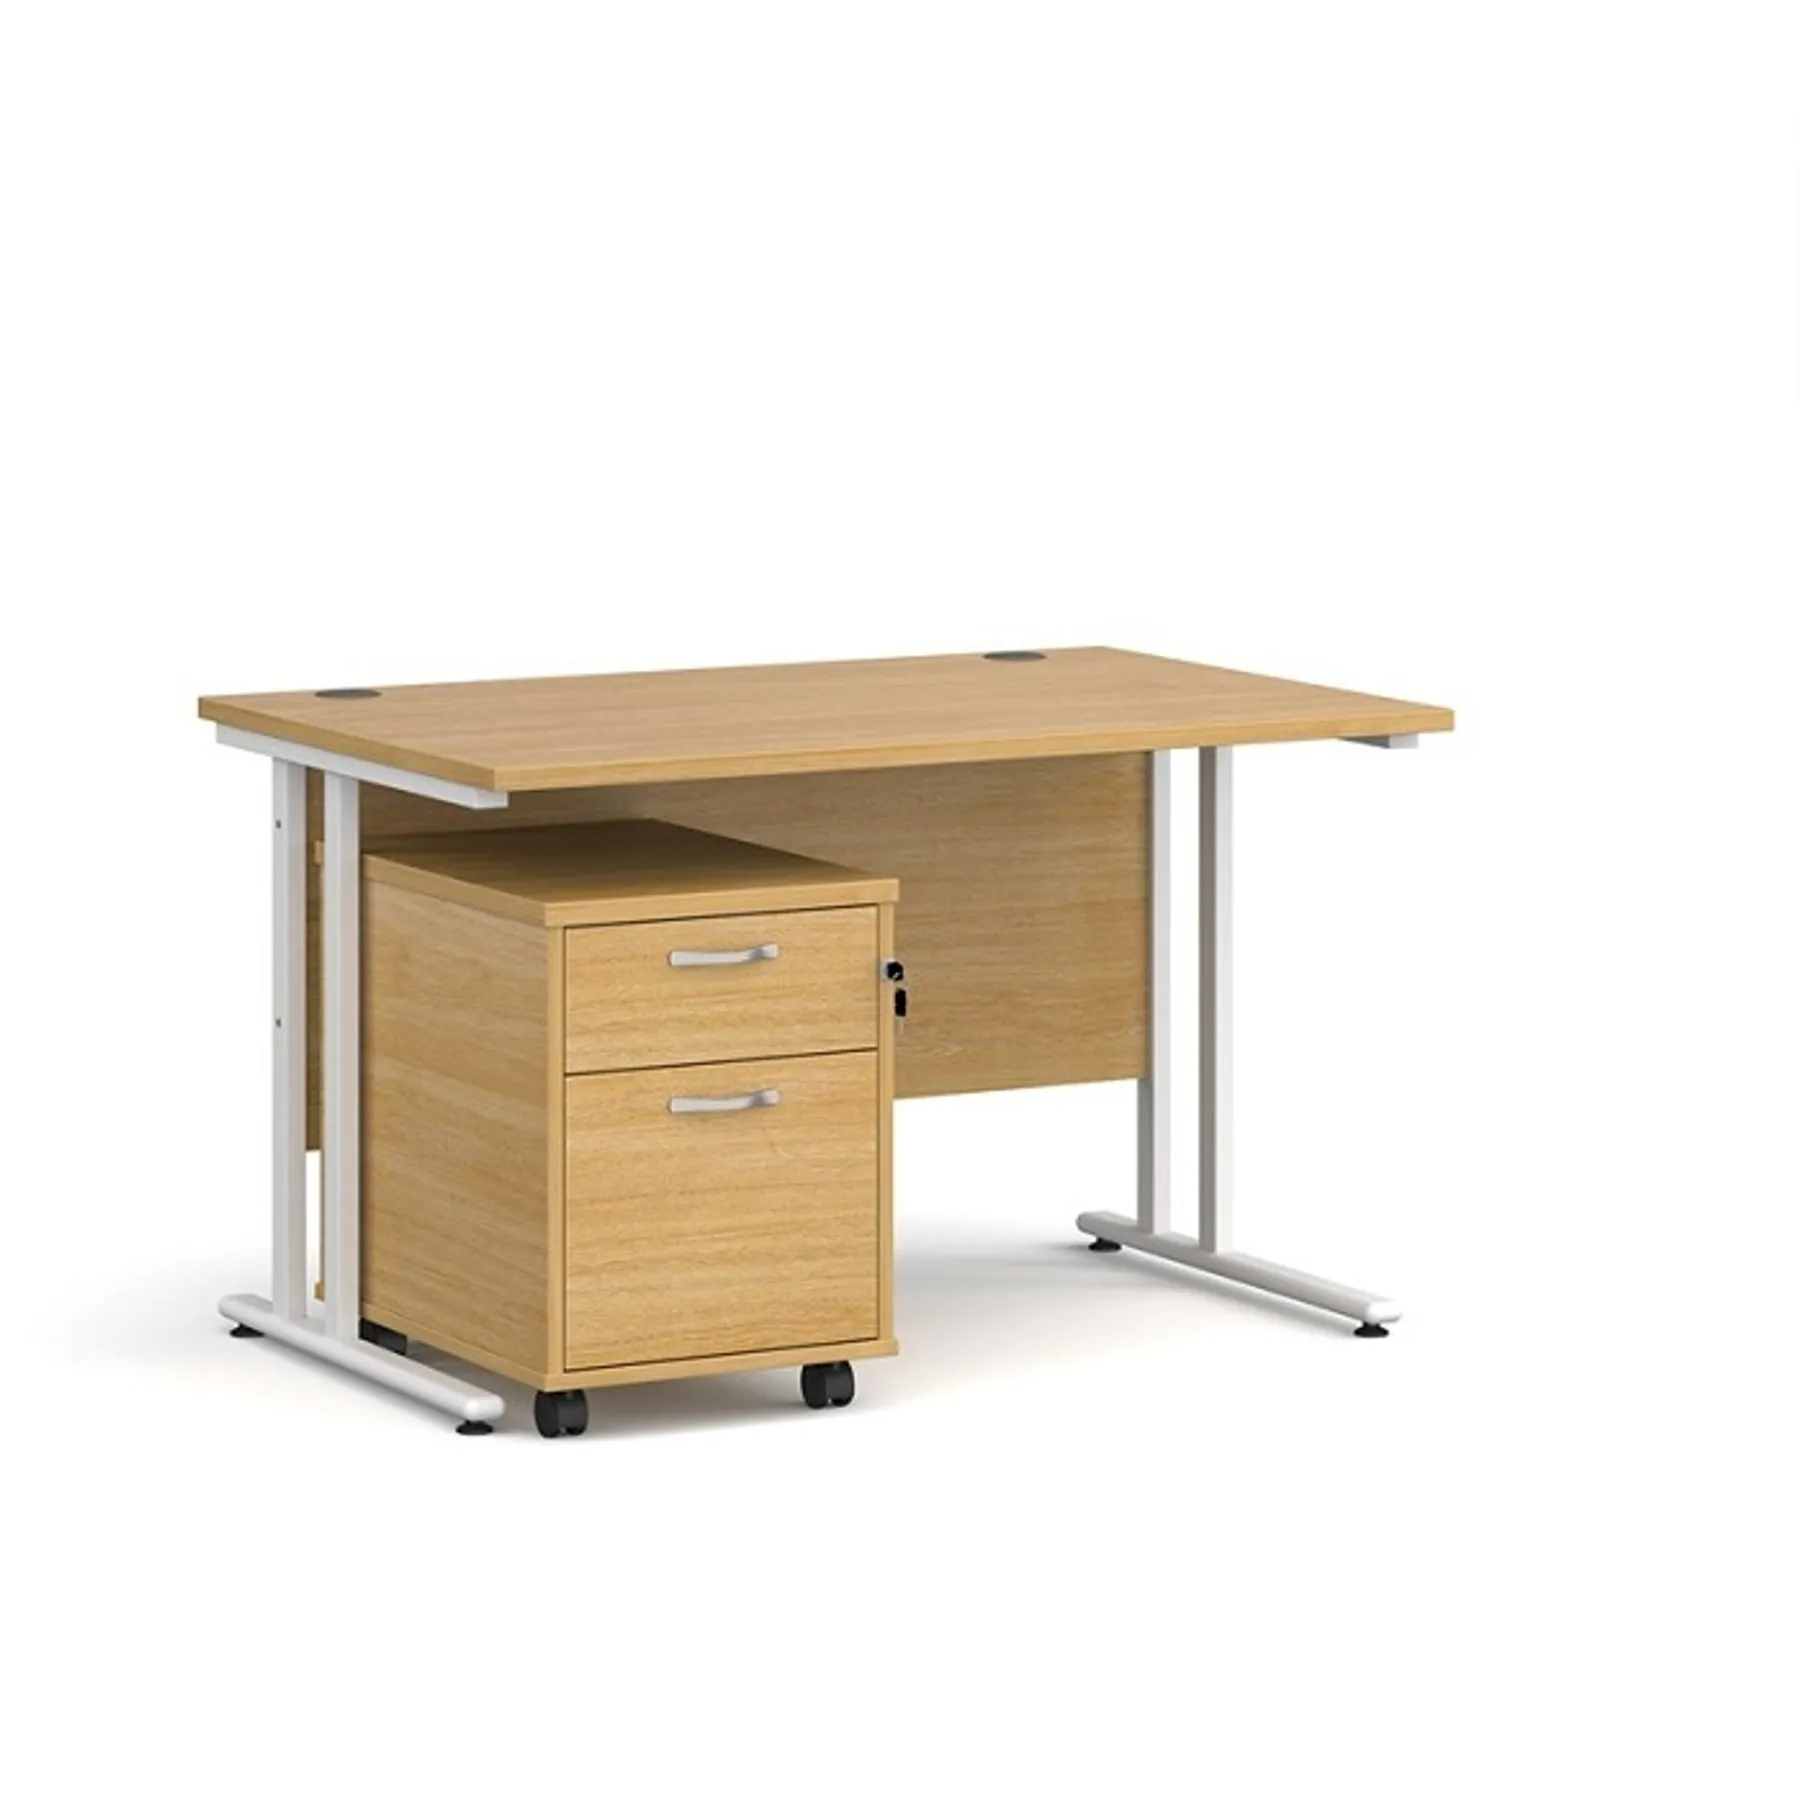 LOF Direct Dams Rectangular desk and pedestal bundle sb WH212 oak desk